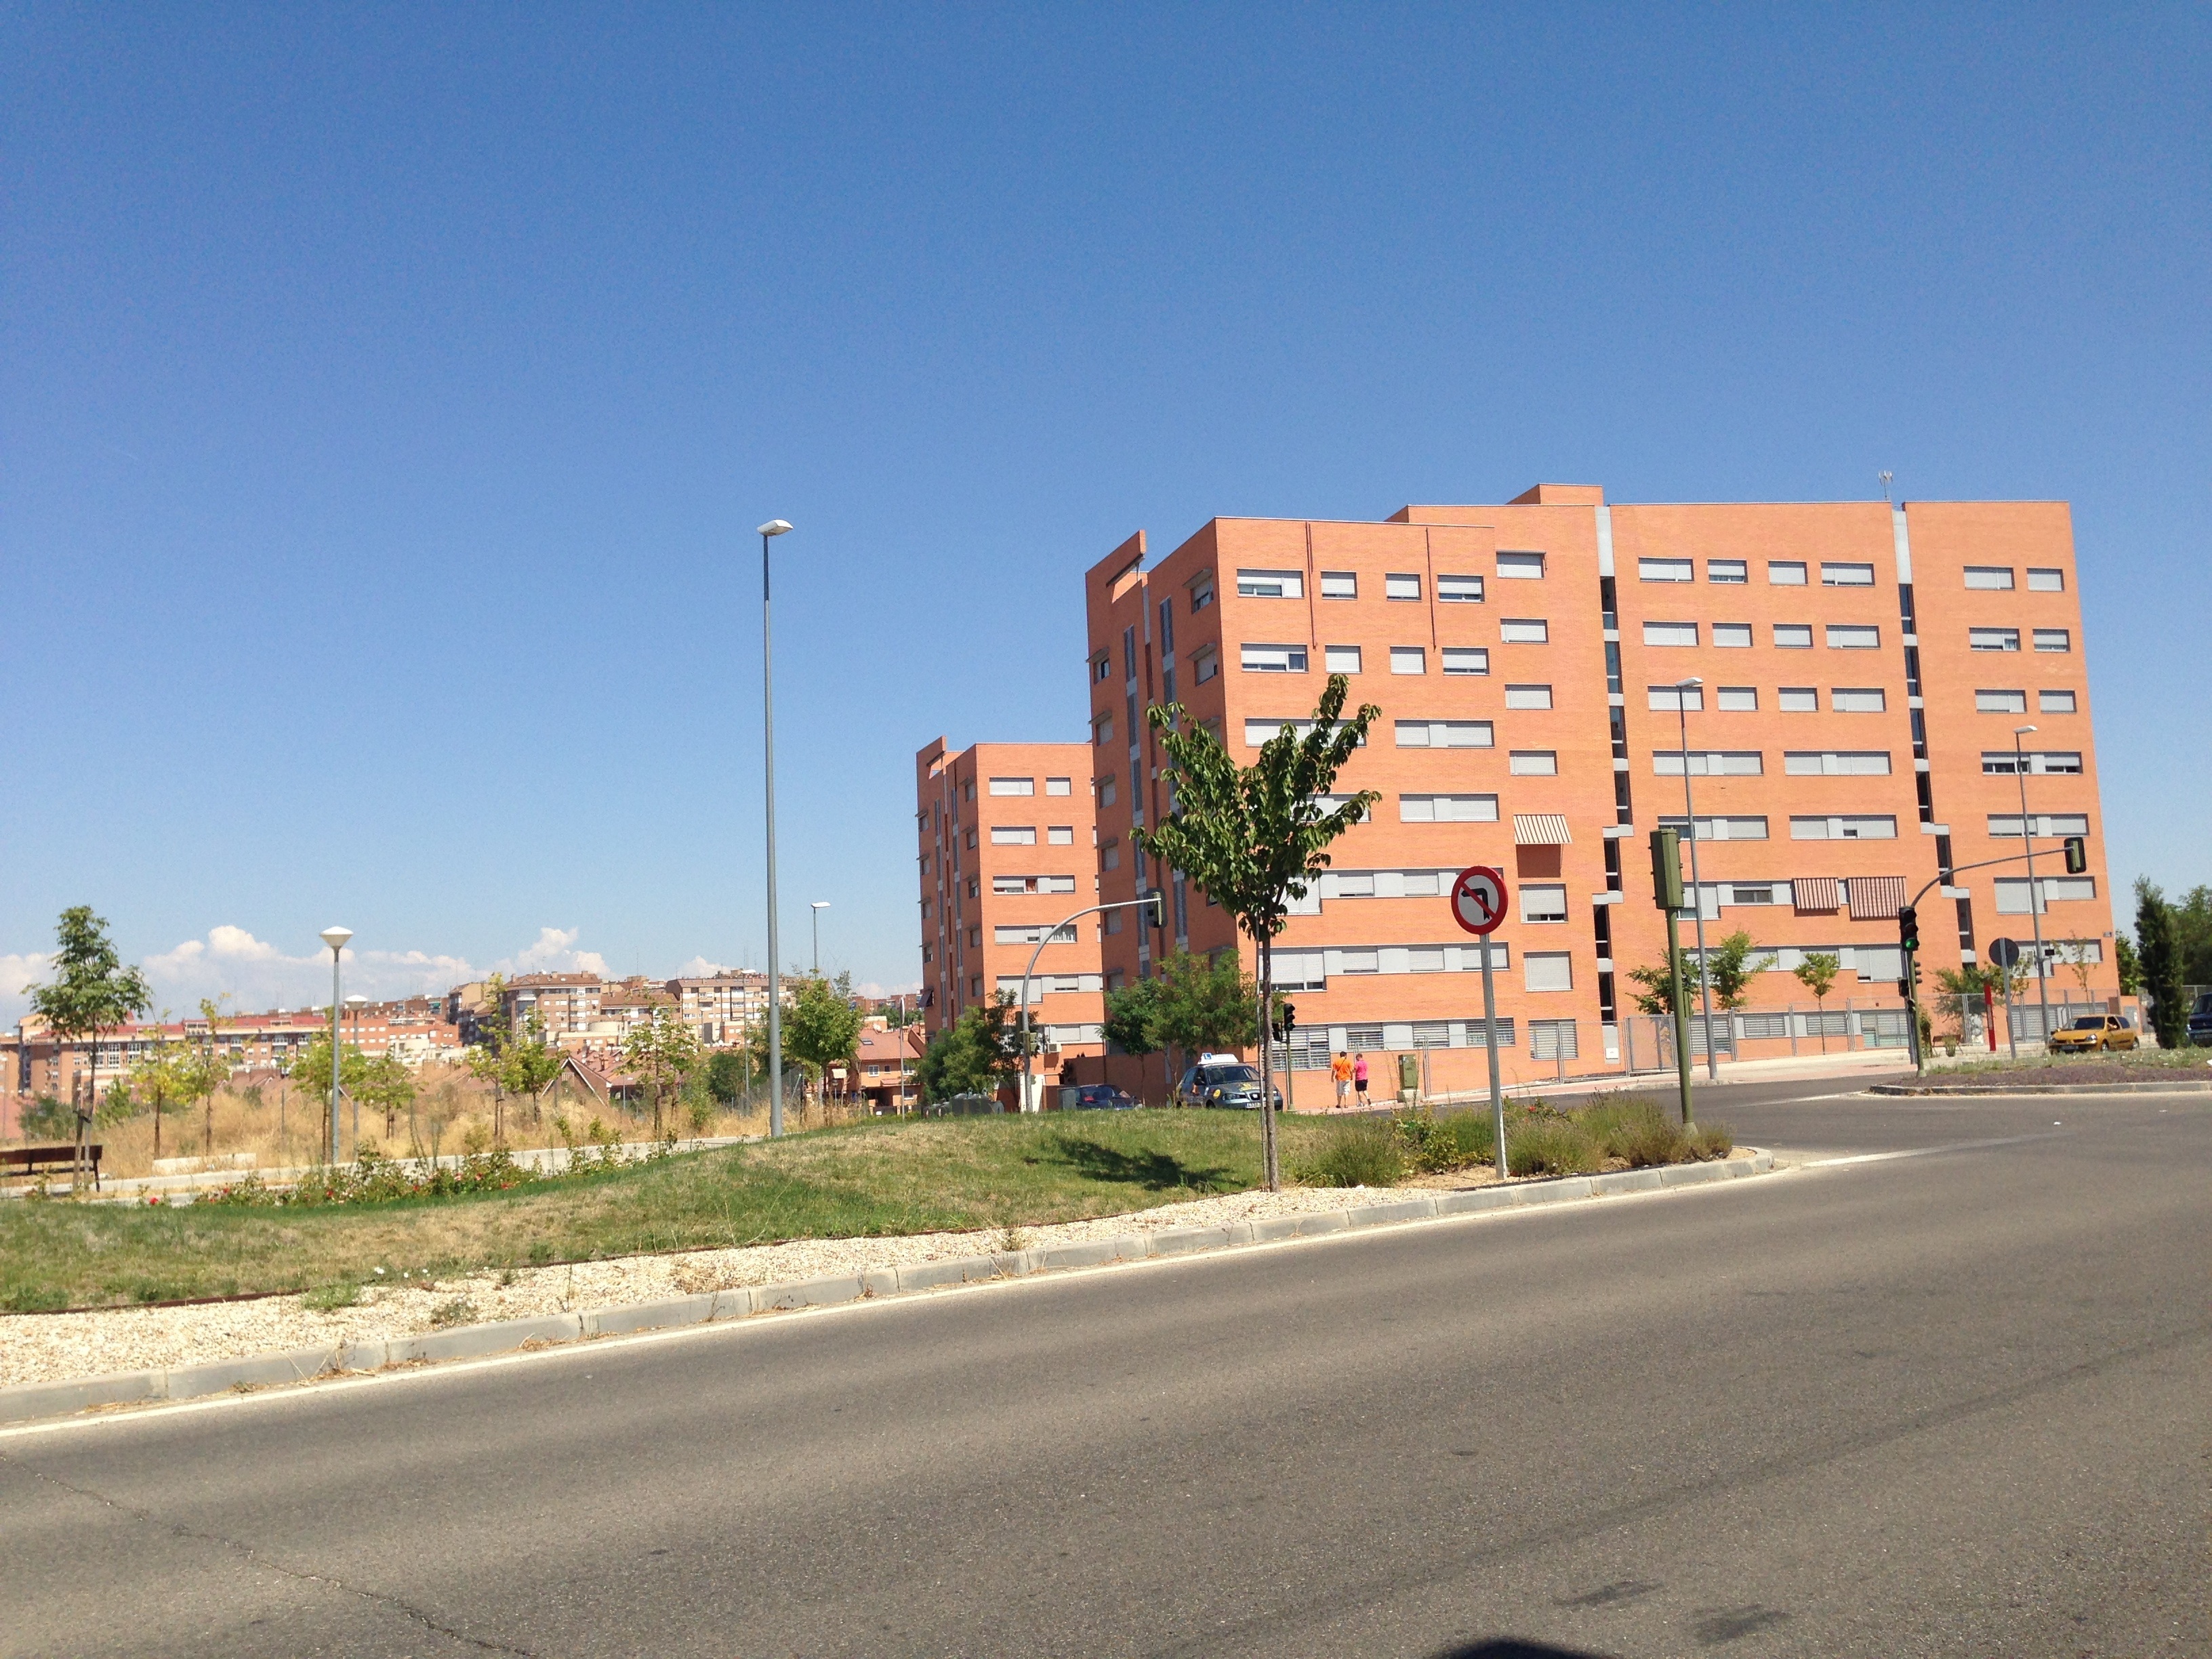 La compraventa de viviendas en Navarra crece un 9,7% en noviembre respecto a 2012